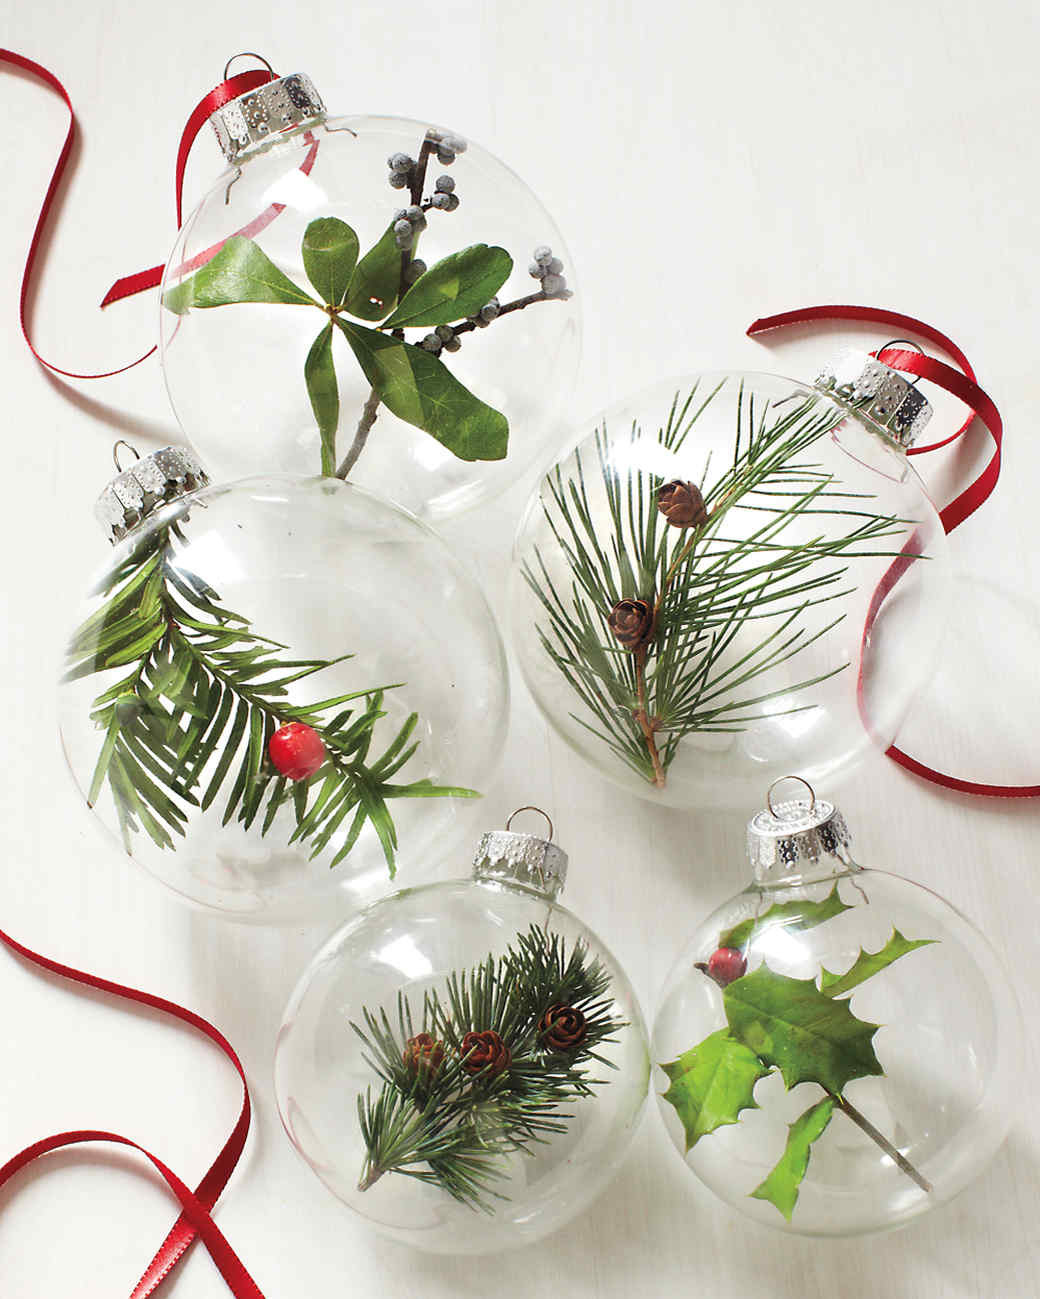 DIY Christmas Ornaments Martha Stewart
 DIY Christmas Ornament Projects